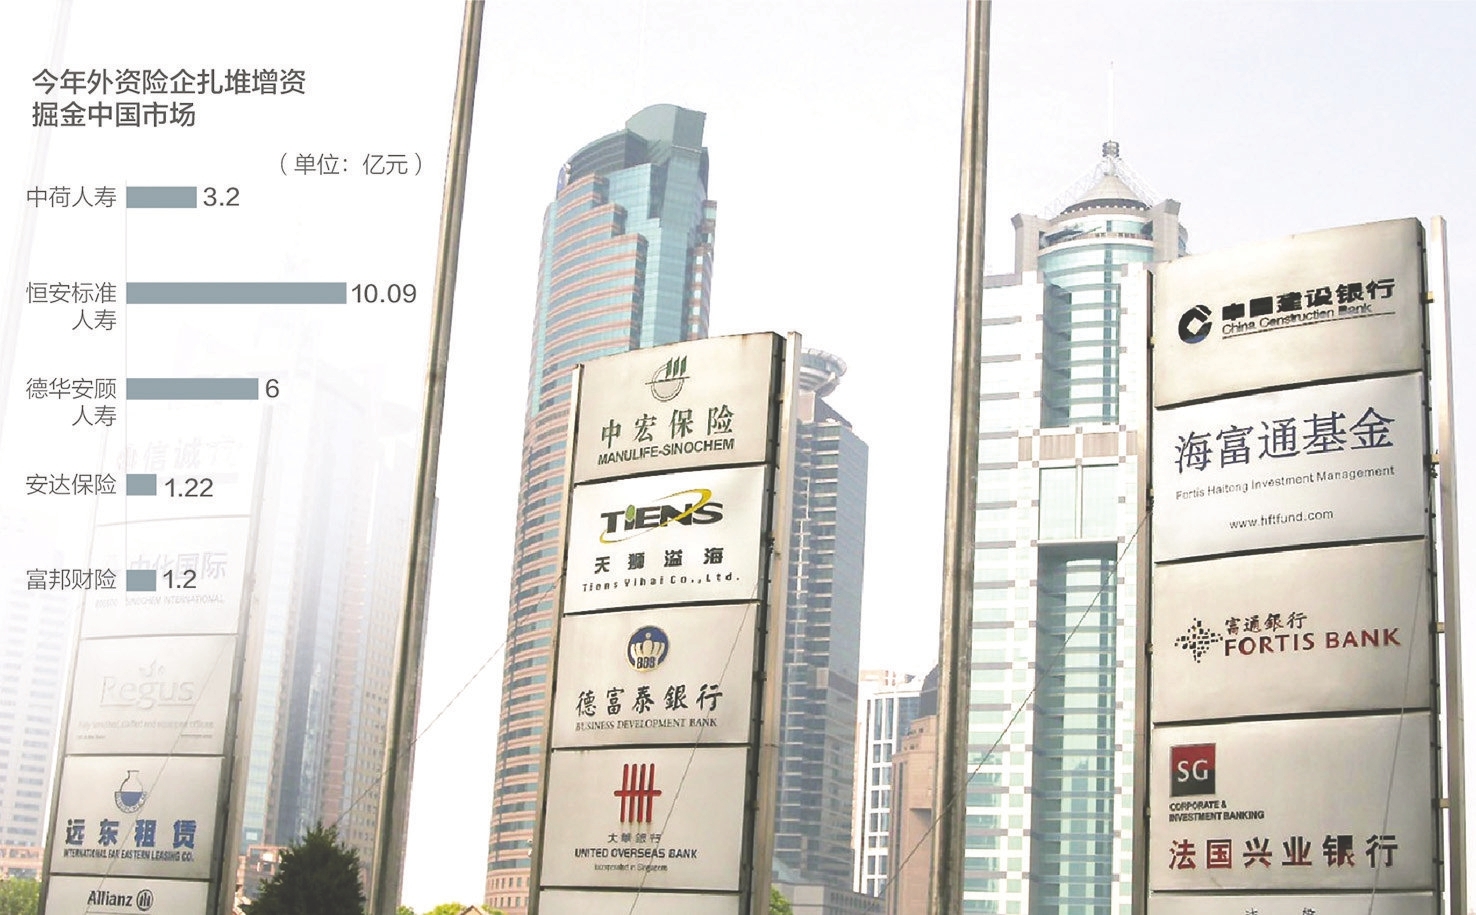 瑞士再保险北京分公司拟增资 加码布局中国市场